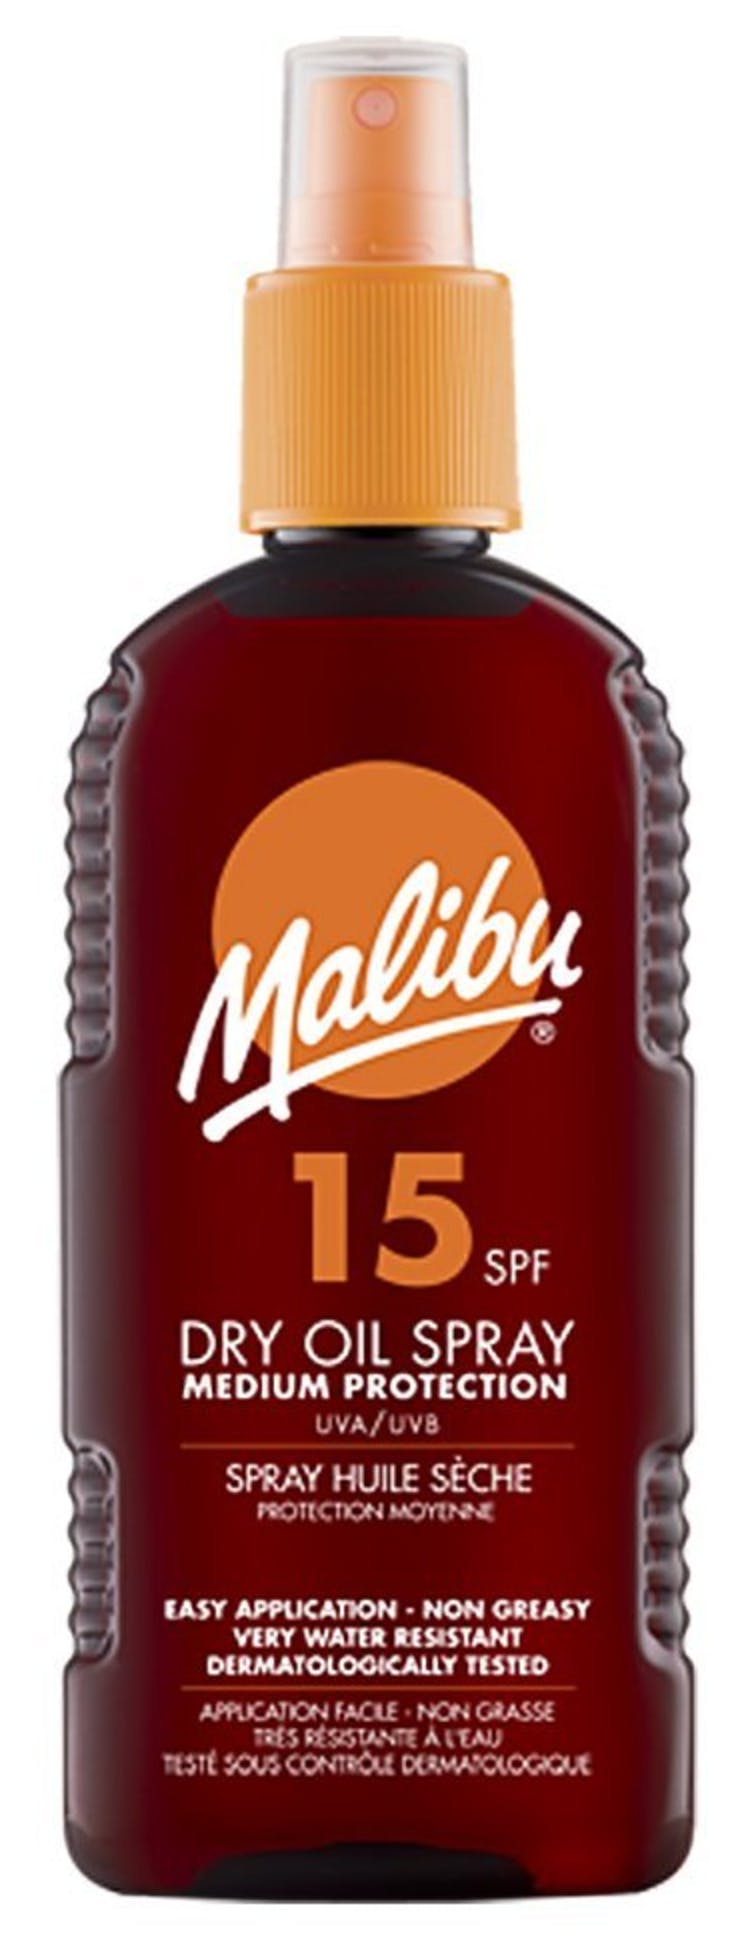 Malibu Dry Oil Spray SPF15 200 ml